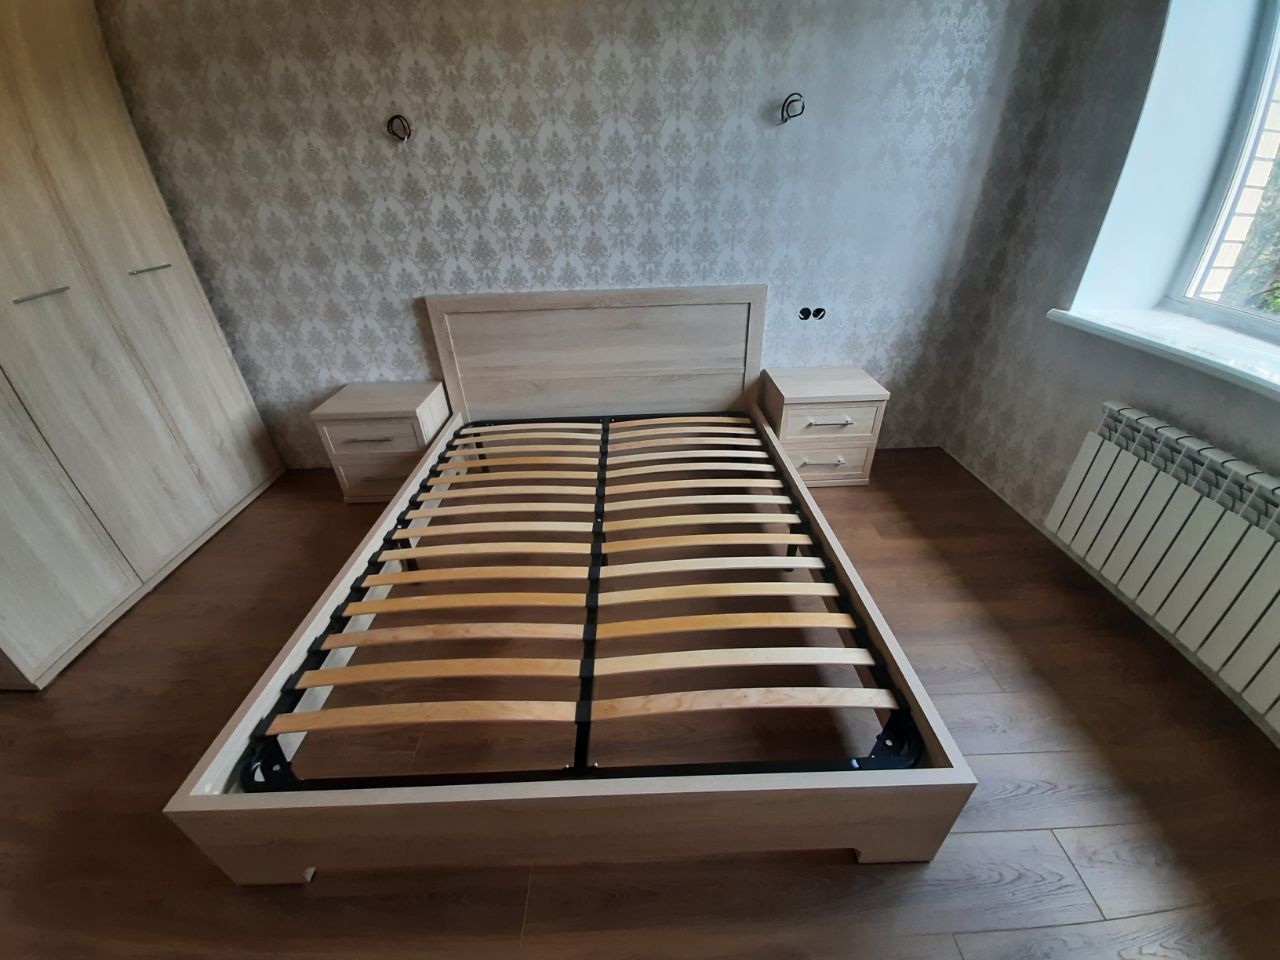 Двуспальная кровать "Мальта" 180 х 200 с подъемным механизмом цвет венге